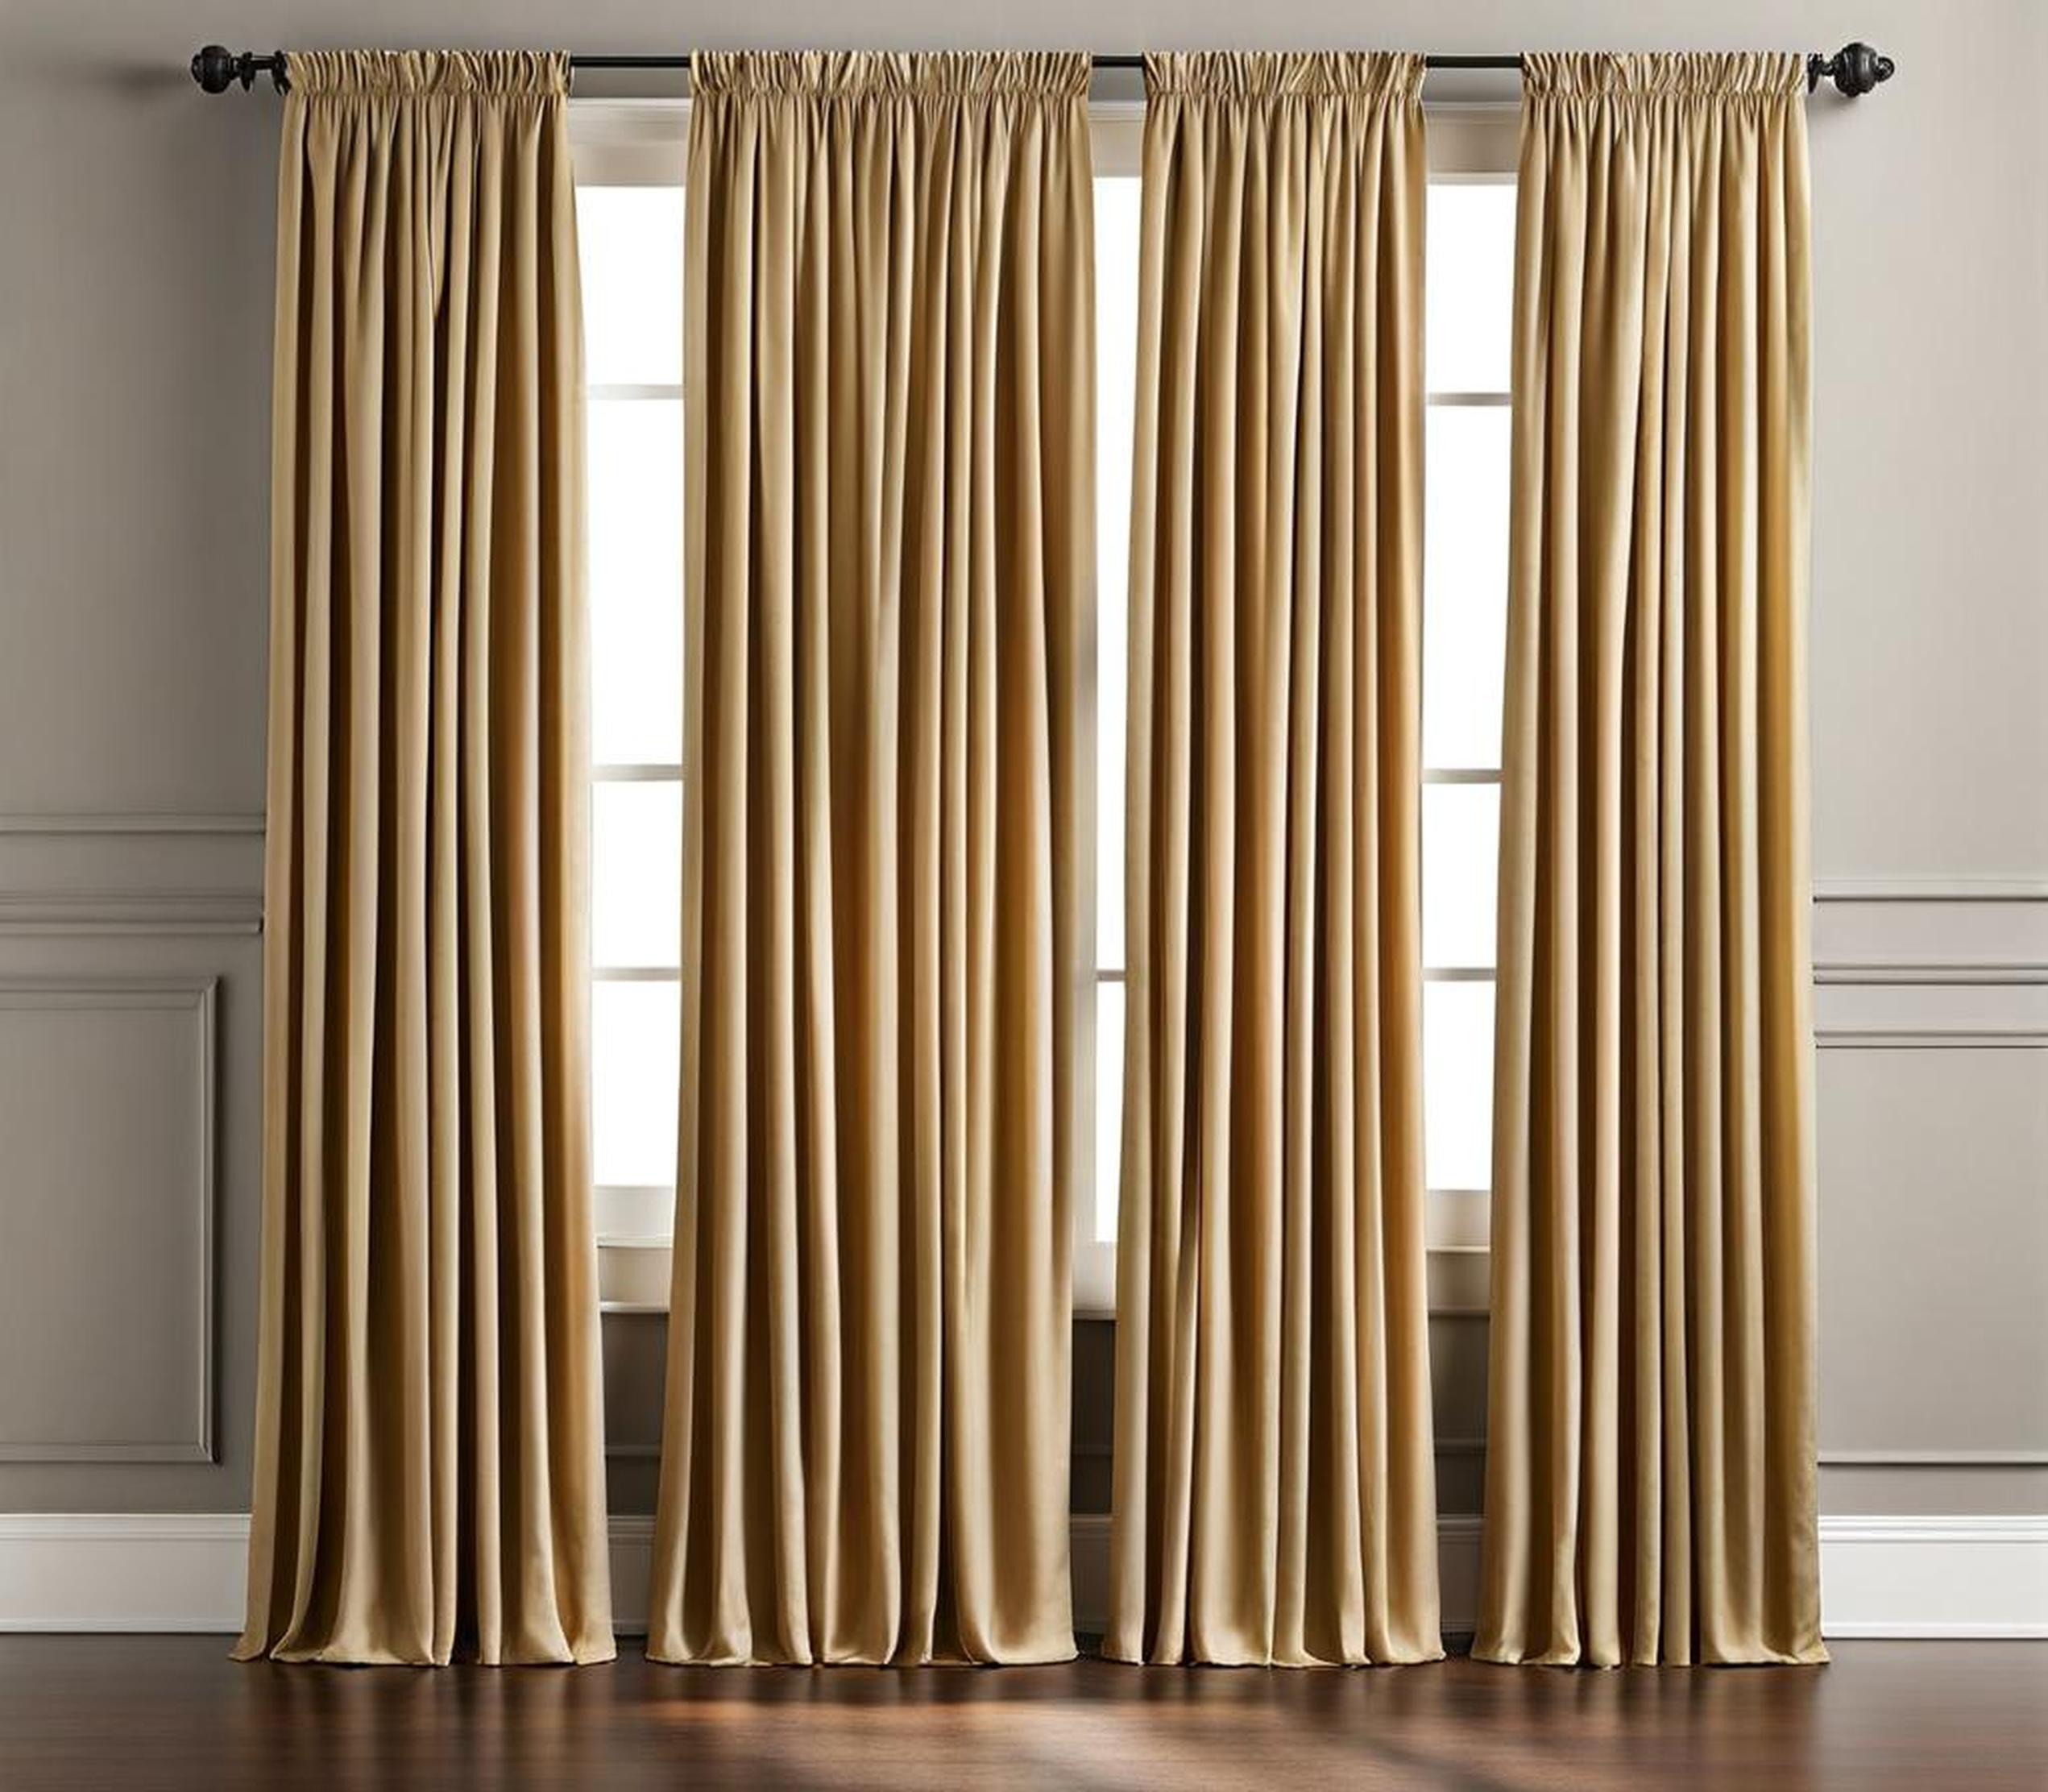 triple window curtain ideas